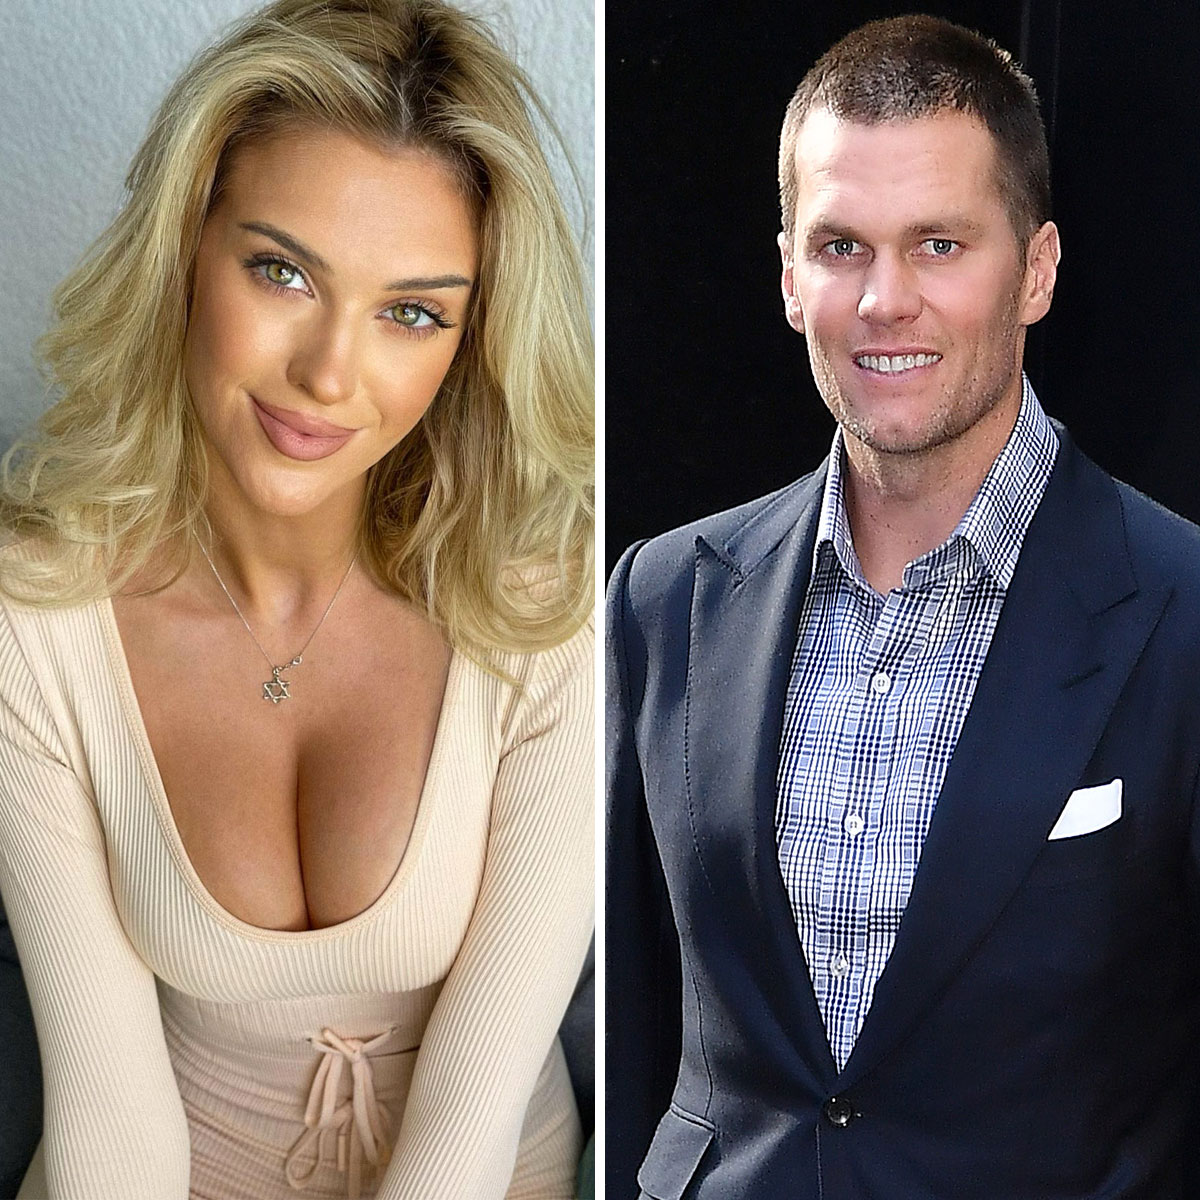 Tom Brady Faces Relationship Rumors With Model Veronika Rajek After Gisele  Bündchen Divorce - SHEfinds